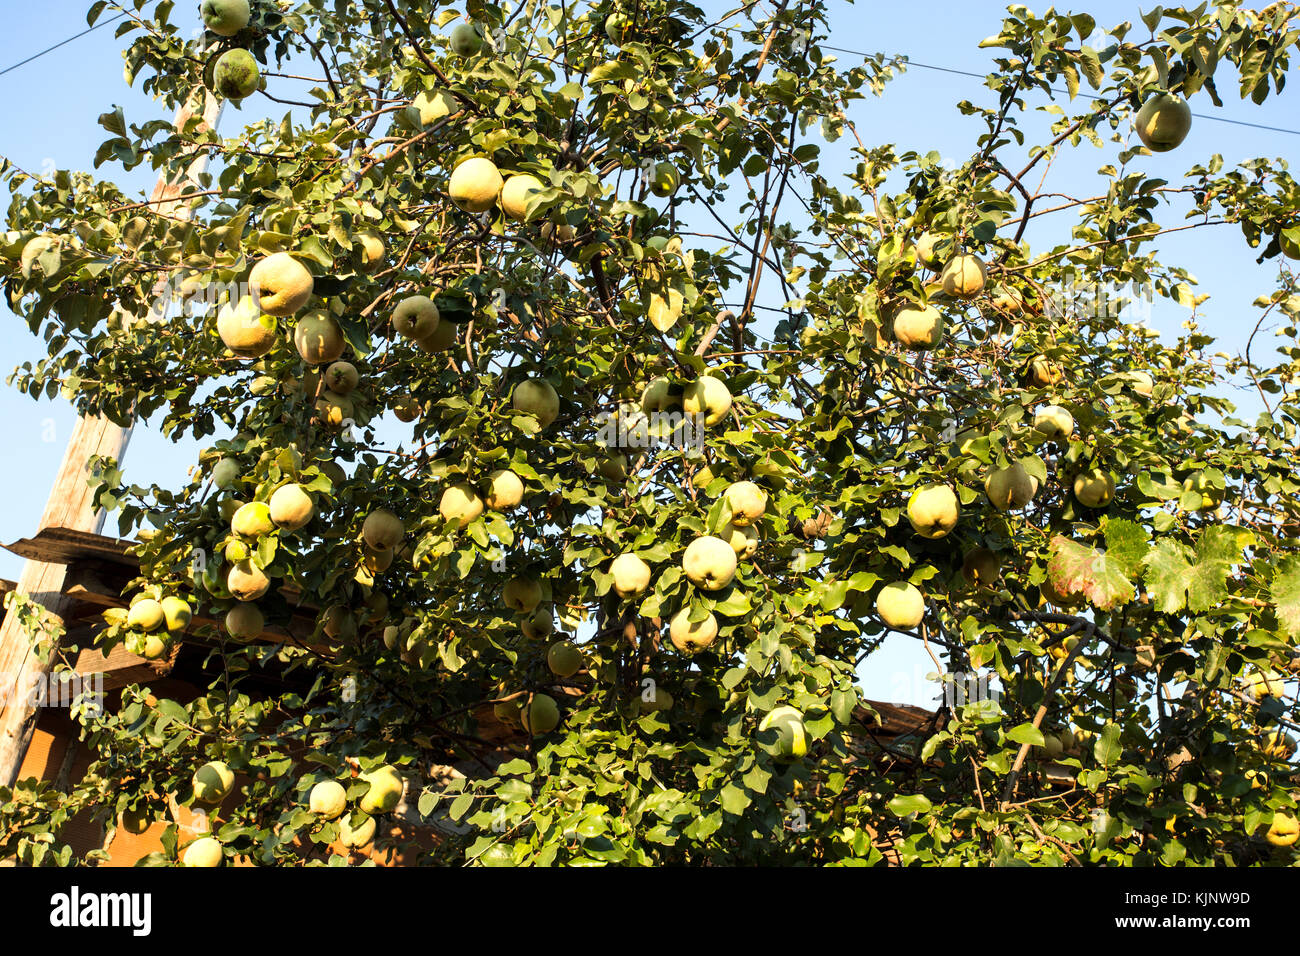 Albero di mela cotogna, Cydonia oblonga, è albero a foglie decidue che porta un pomacee simile a una pera o apple con un luminoso di colore giallo dorato quando è maturo. Foto Stock